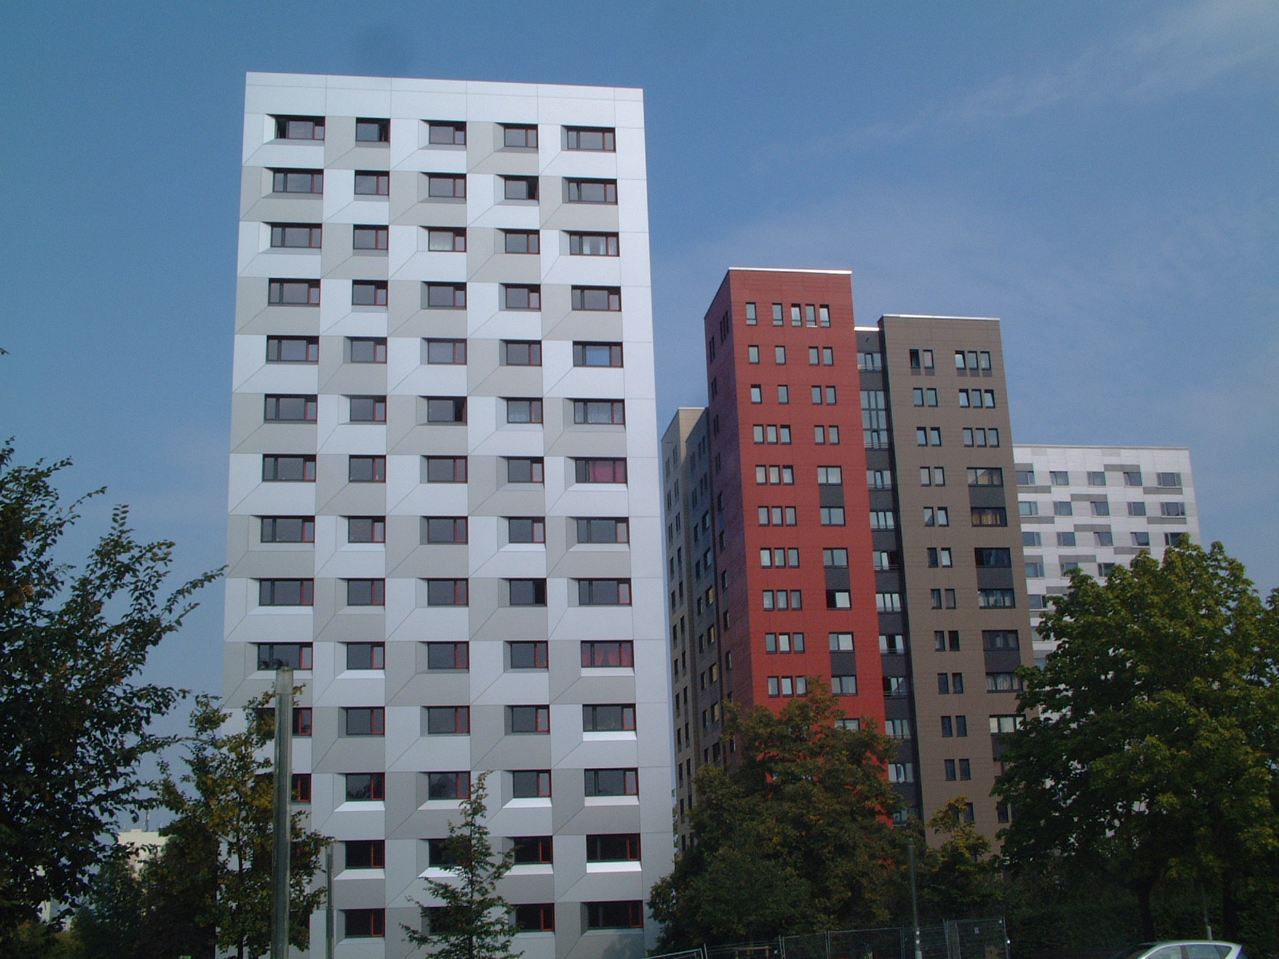 Hochhäuser der Studentenwohnheime an der Wundtstraße